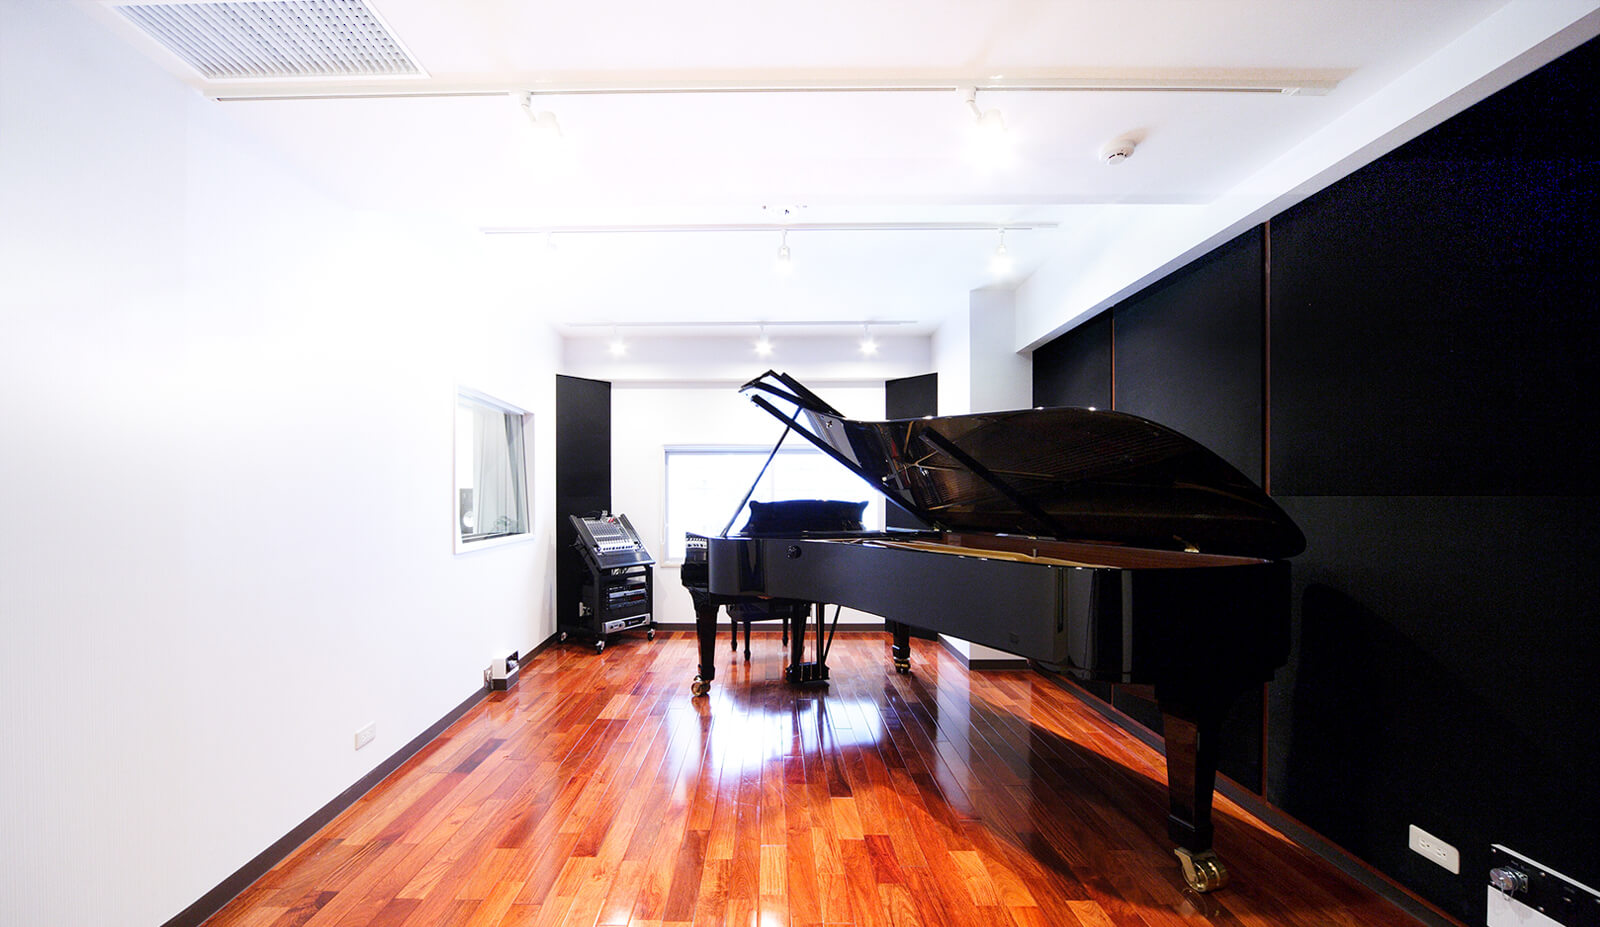 ピアノ練習スタジオ Piano Studio Noah 生ピアノ常設 最高のリハーサル環境